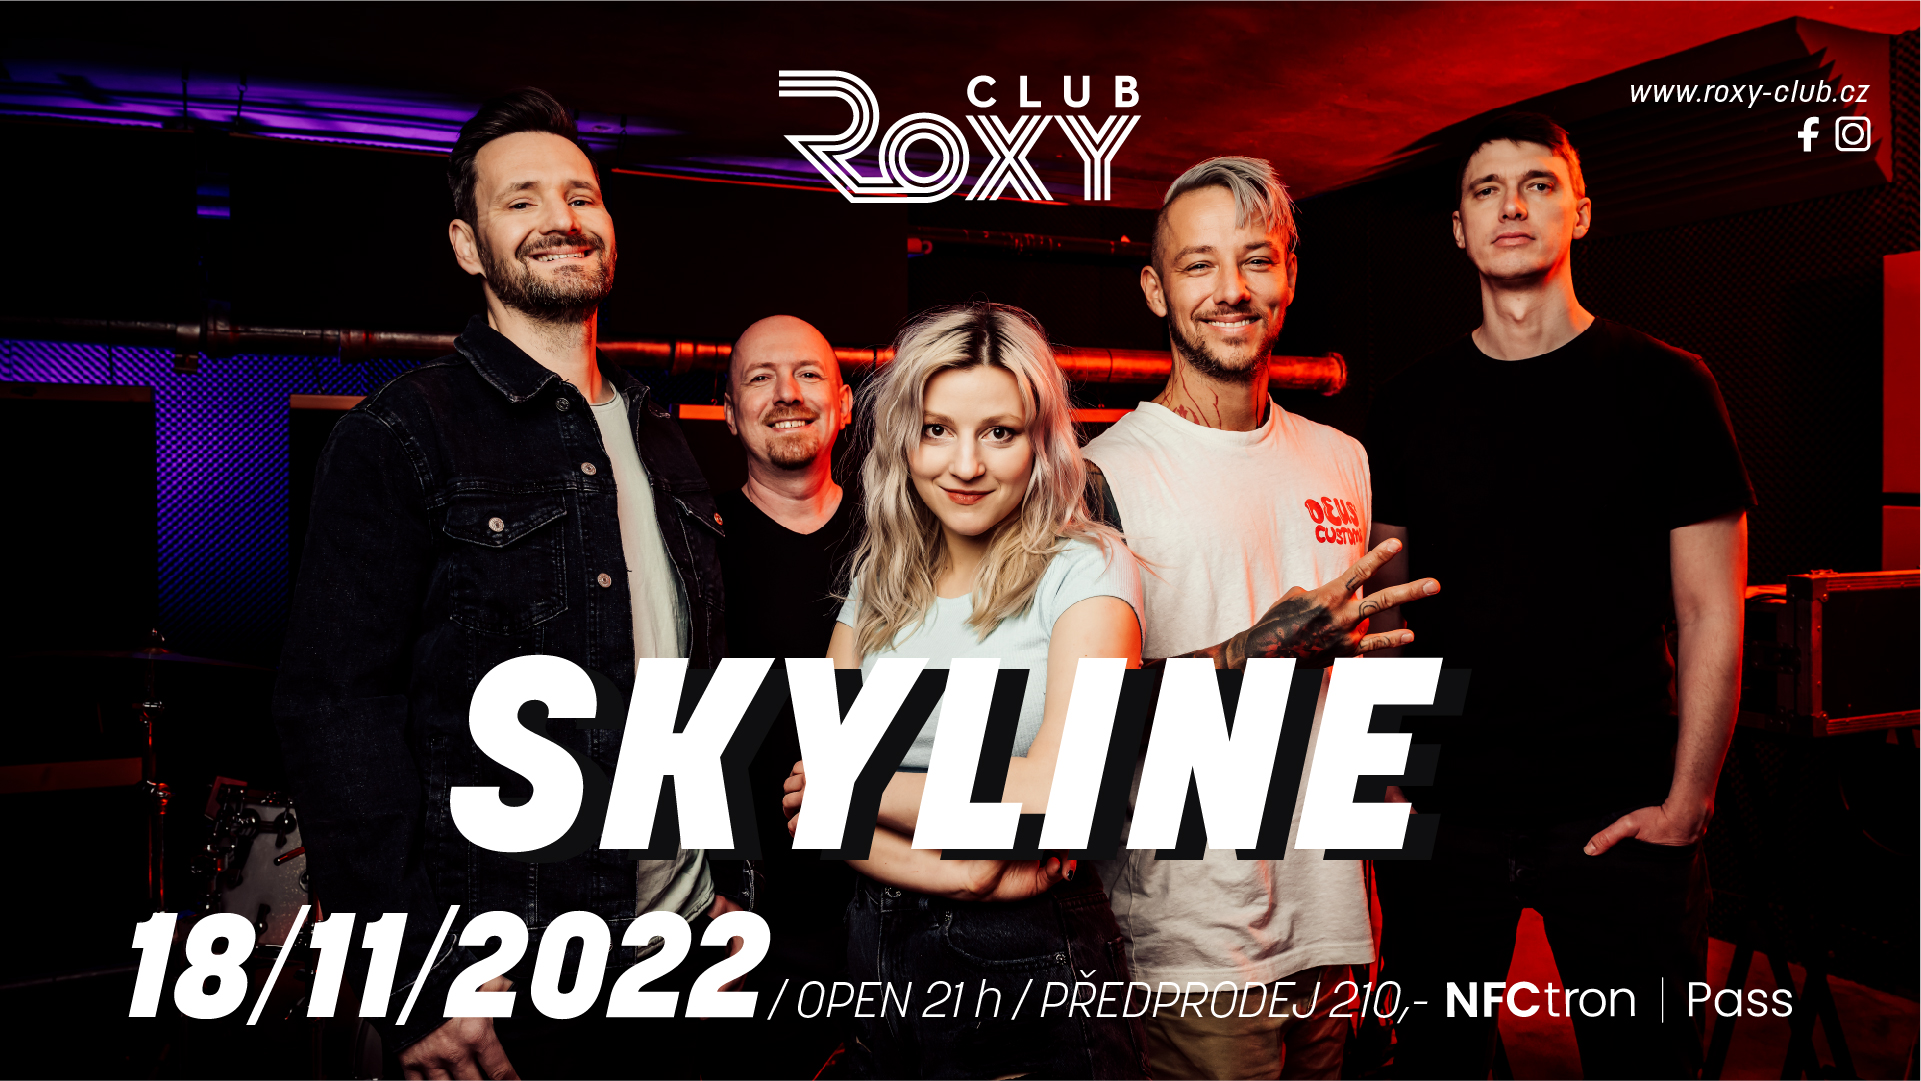 Skyline – Roxy Club Třebíč